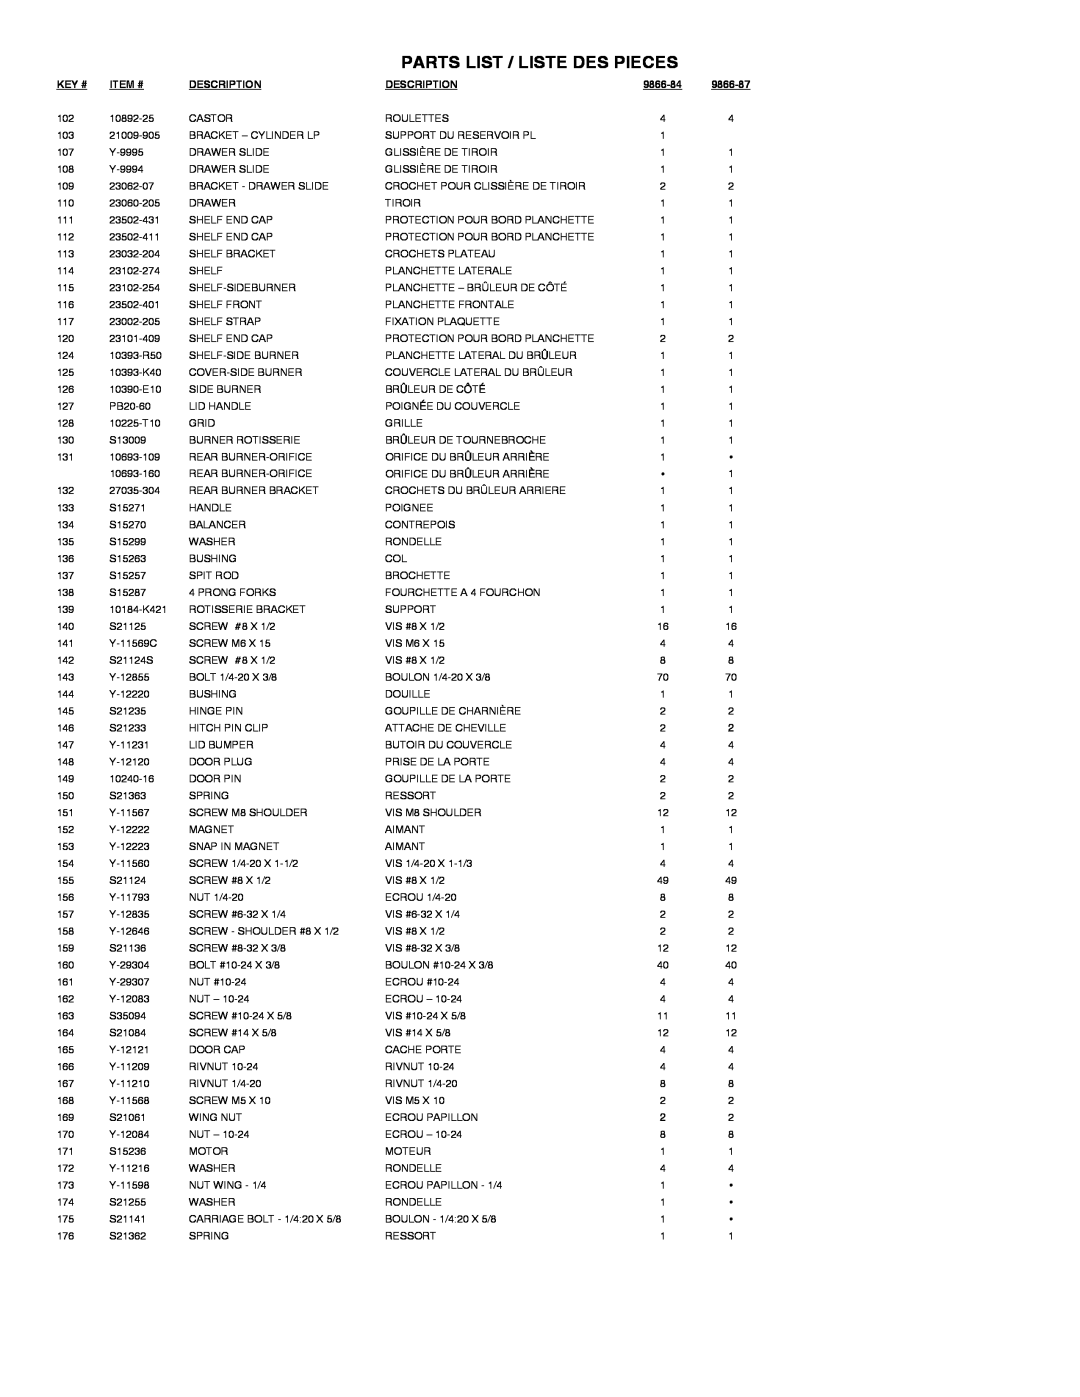 Broil King 9866-87 manual Parts List / Liste Des Pieces, Key #, Item #, Description, 9866-84 